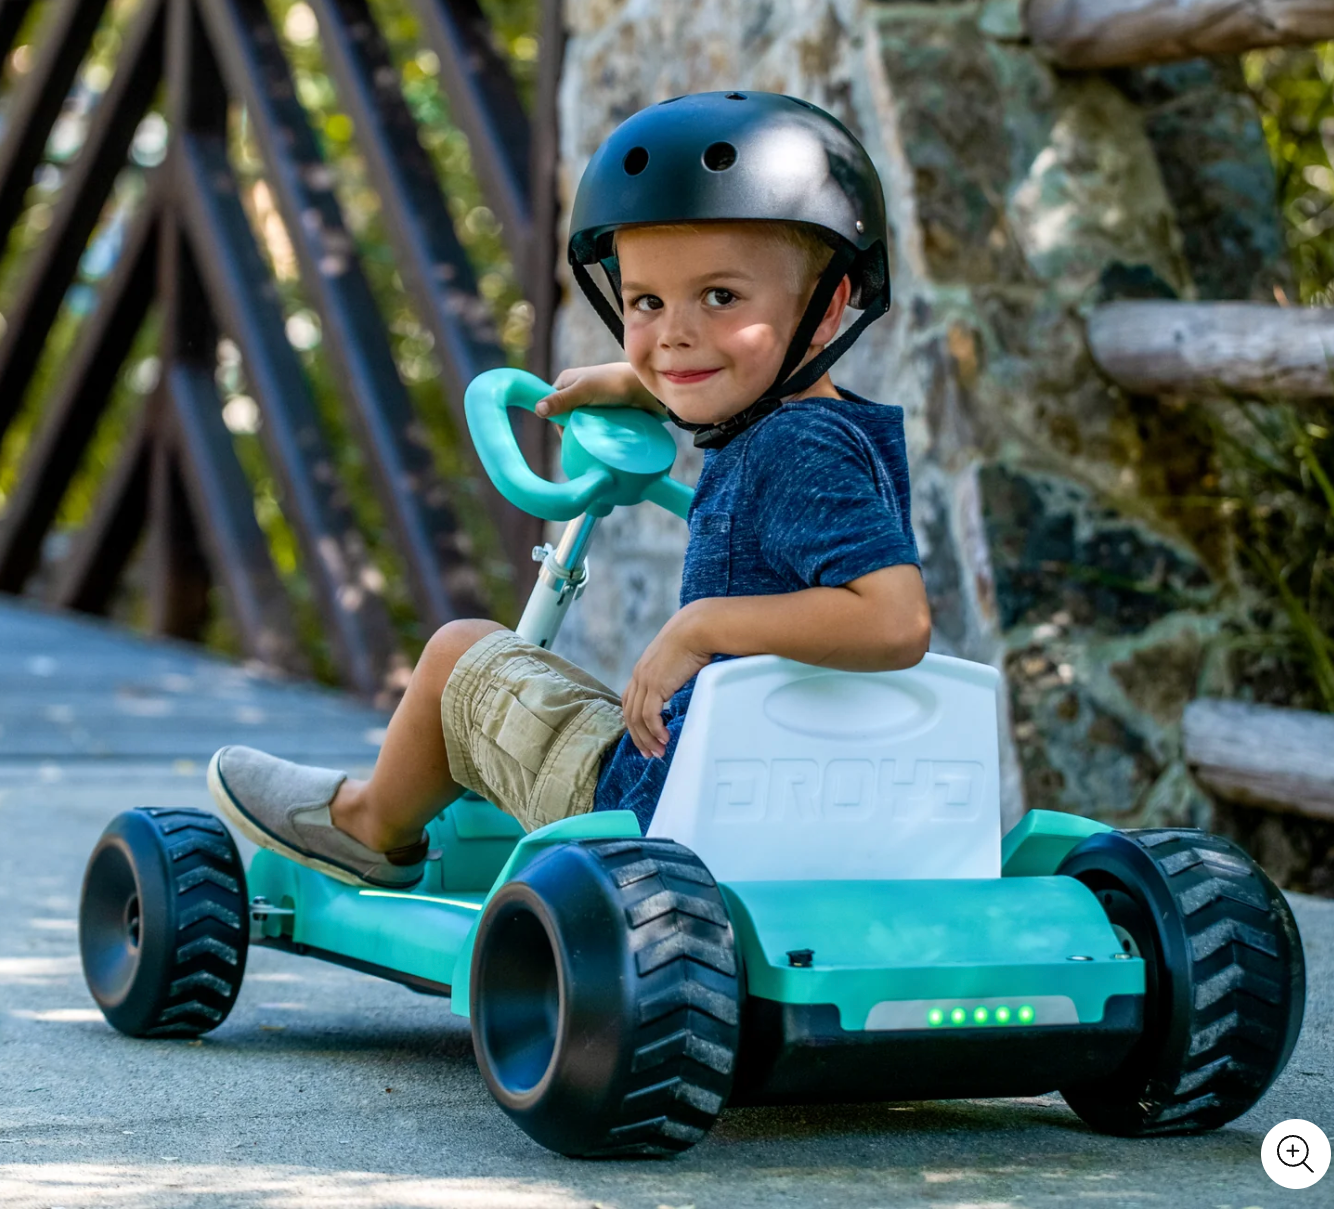 Droyd Zypster Kids Electric Go Kart